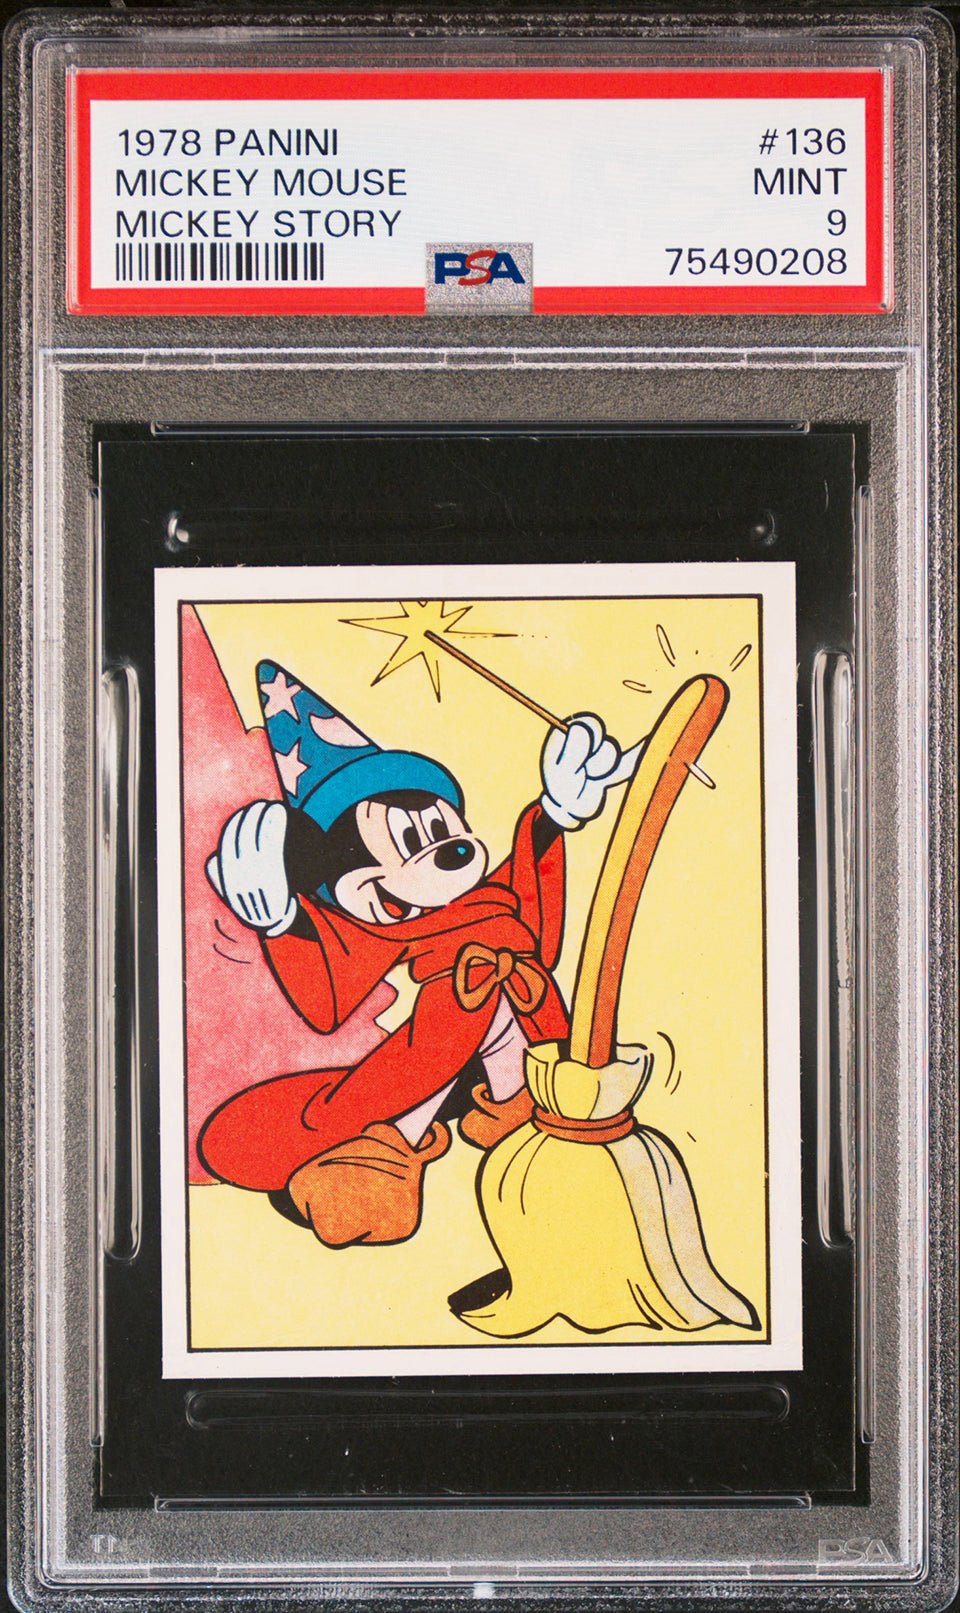 MICKEY MOUSE Fantasia PSA 9 1978 Panini Mickey Story Sticker #136 Disney Base Graded Cards - Hobby Gems